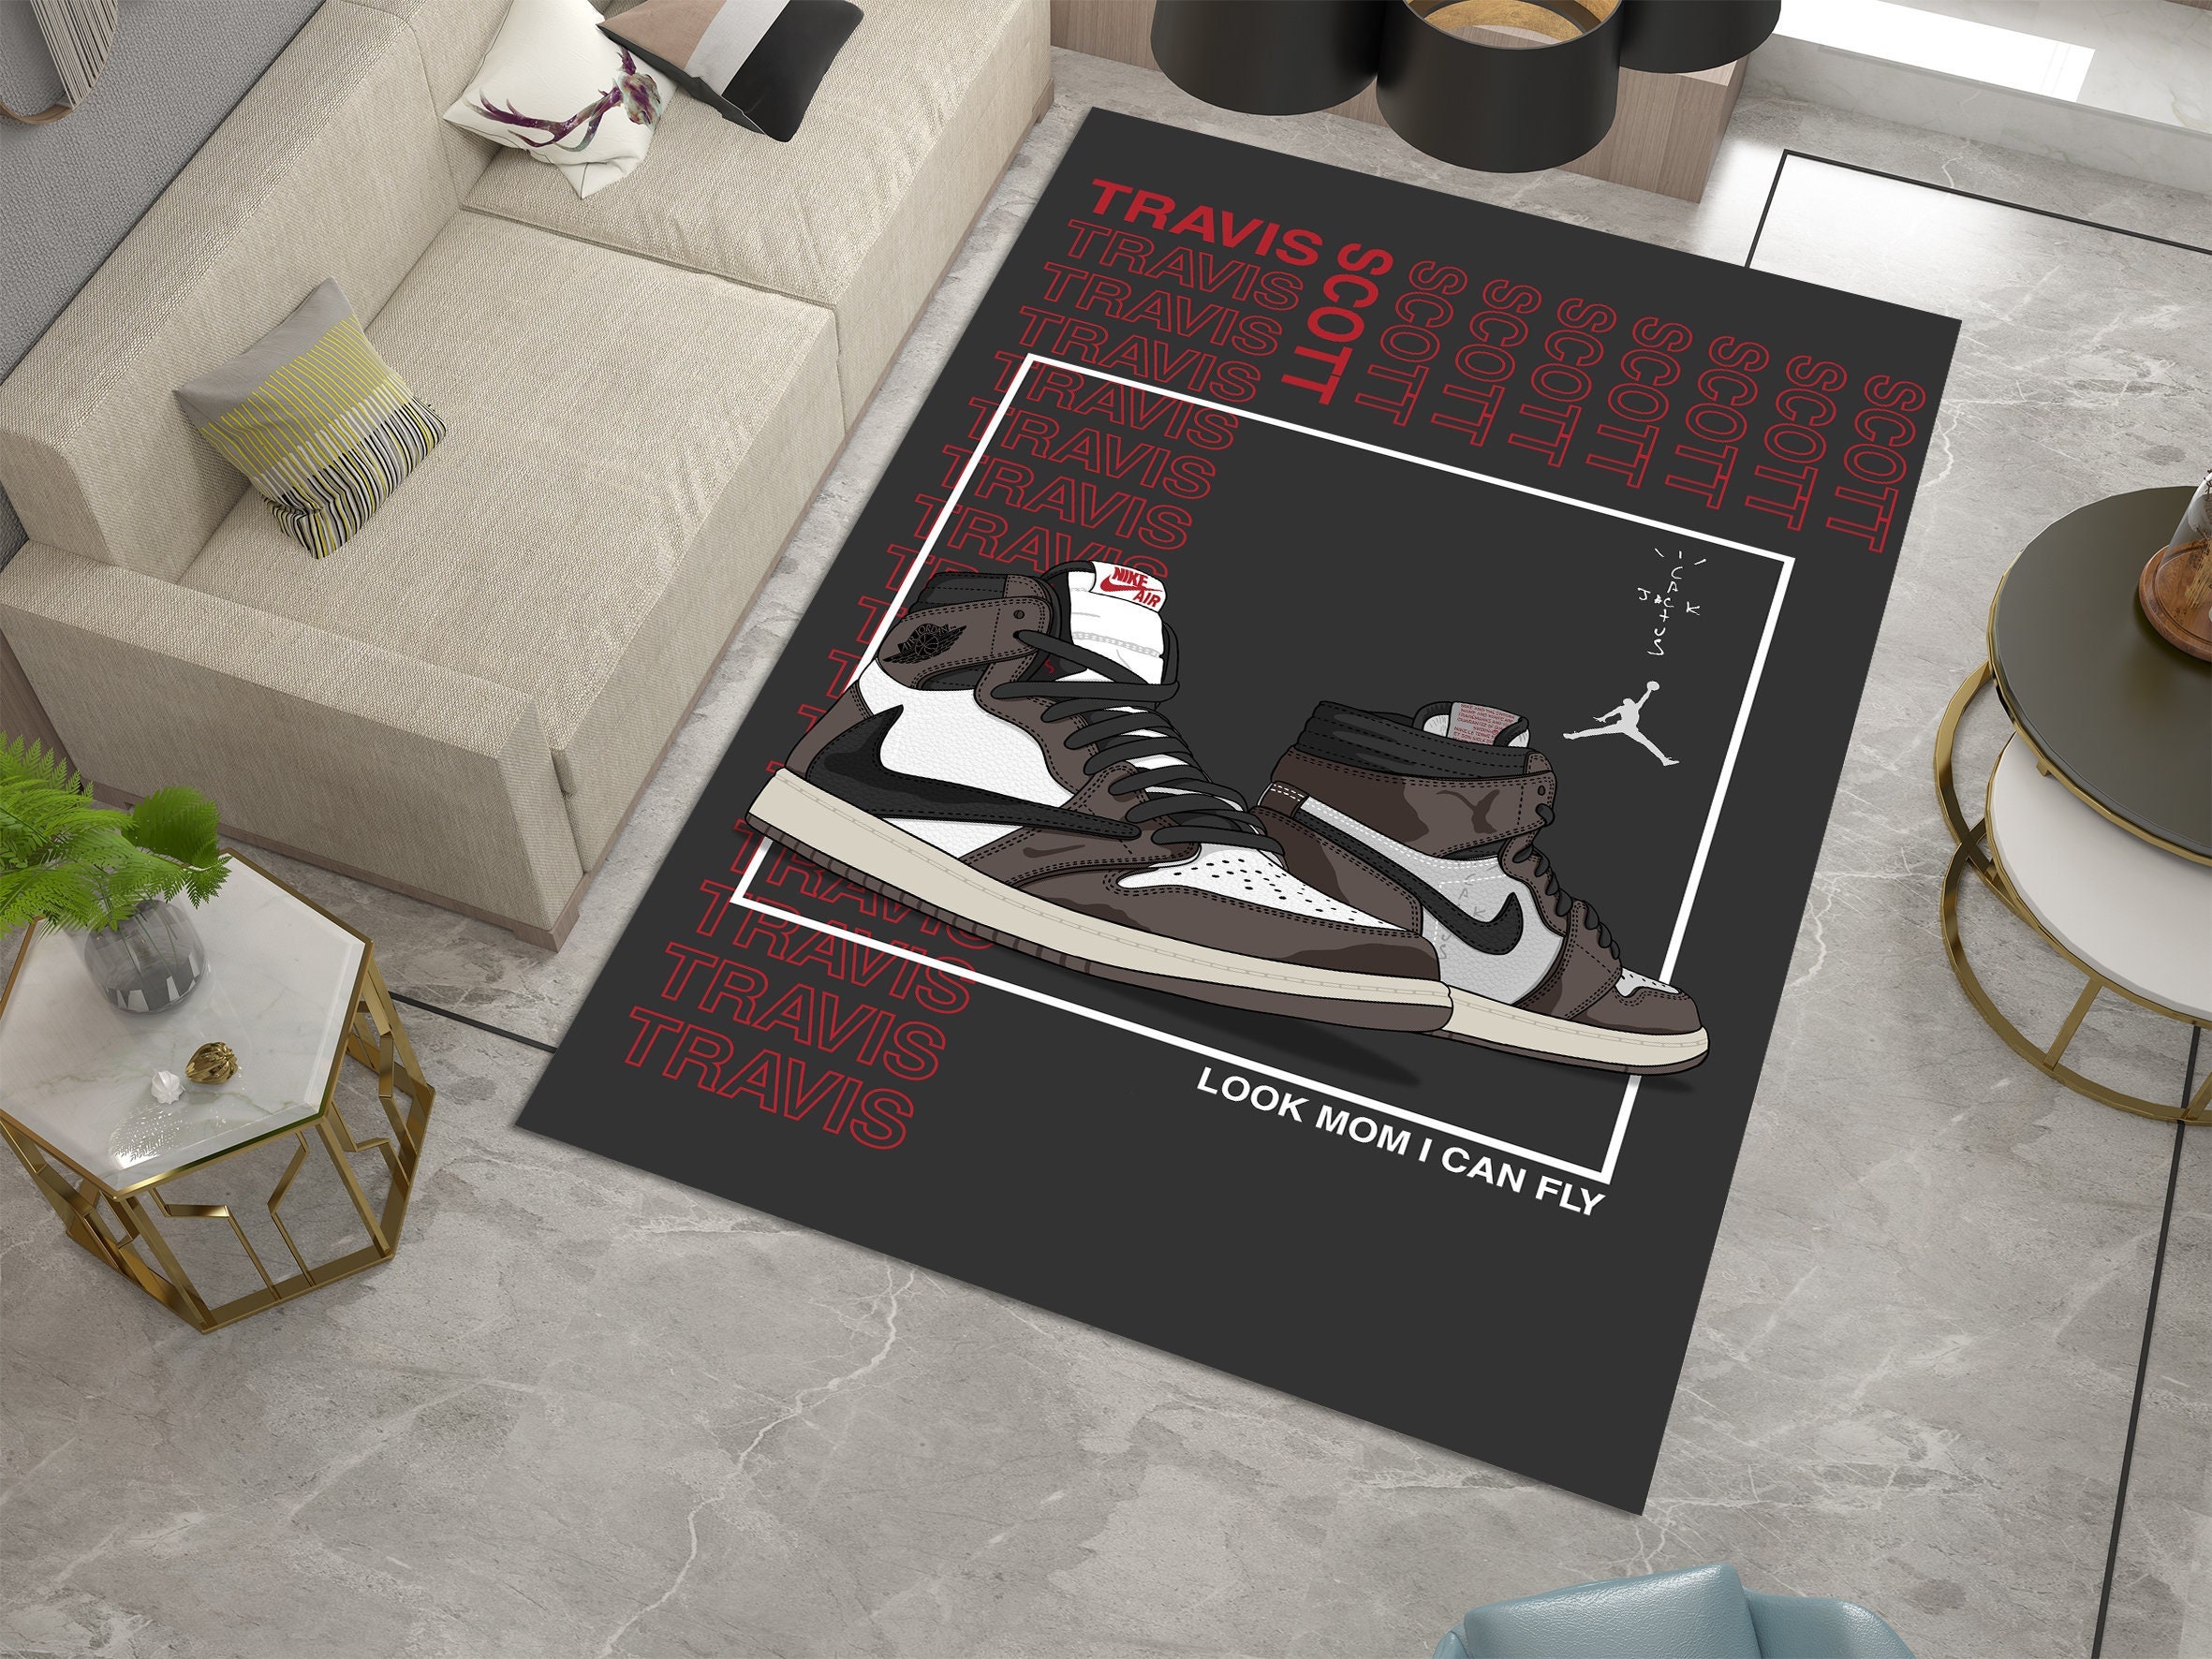 New Square Rug| Air Jordan 1 Travis Scott Sneakers Carpet Personalized Carpet Gift Popular Rug Custom Carpet Designsneakers Room Rugarea Rugshypebeast - Jordan Area Rug